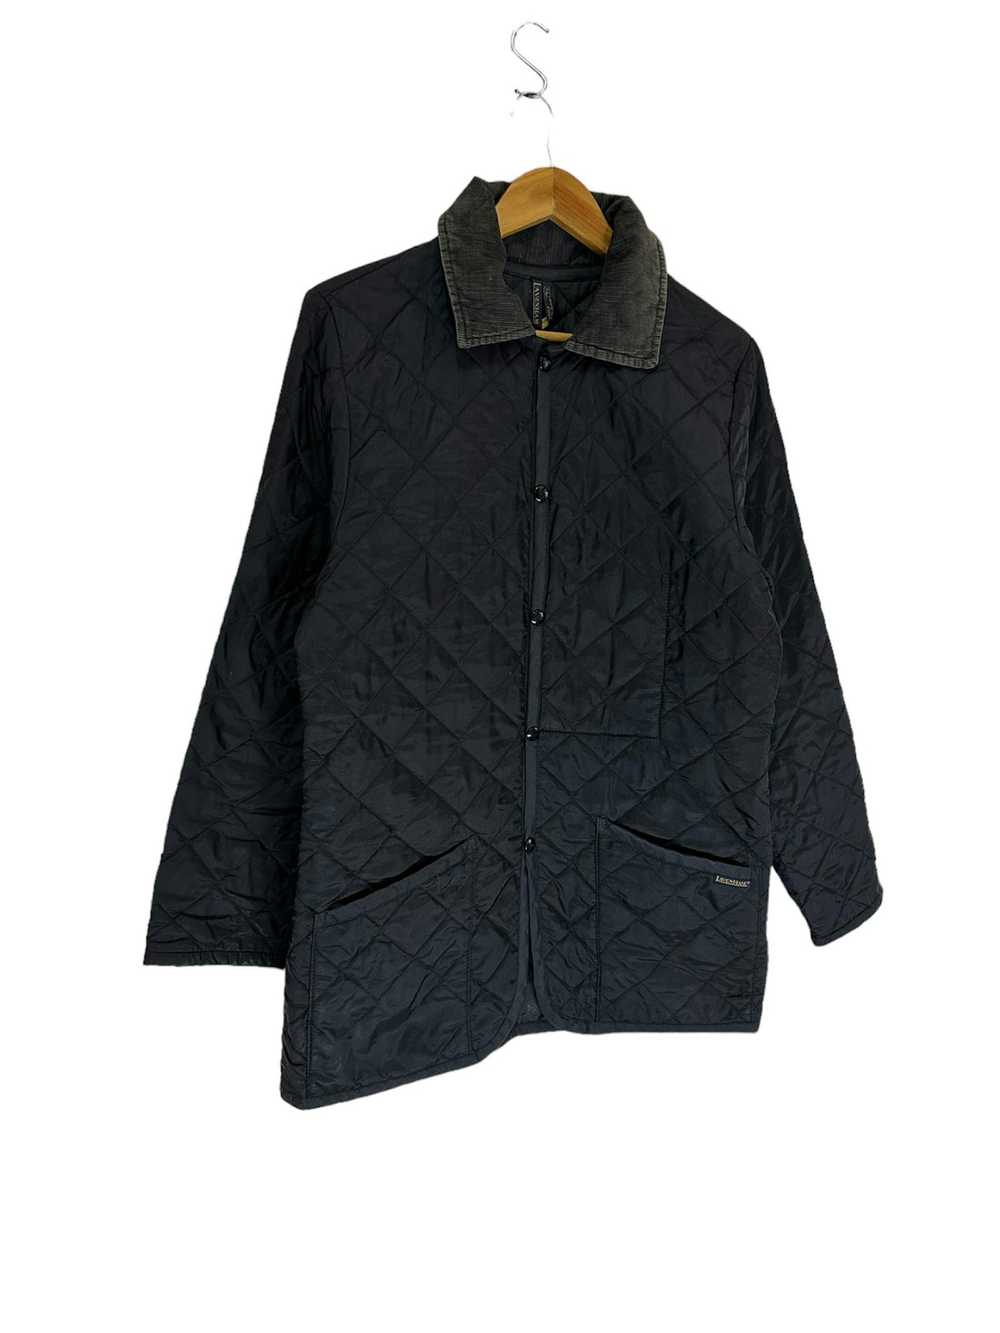 Lavenham Lavenham quilted jacket - image 3